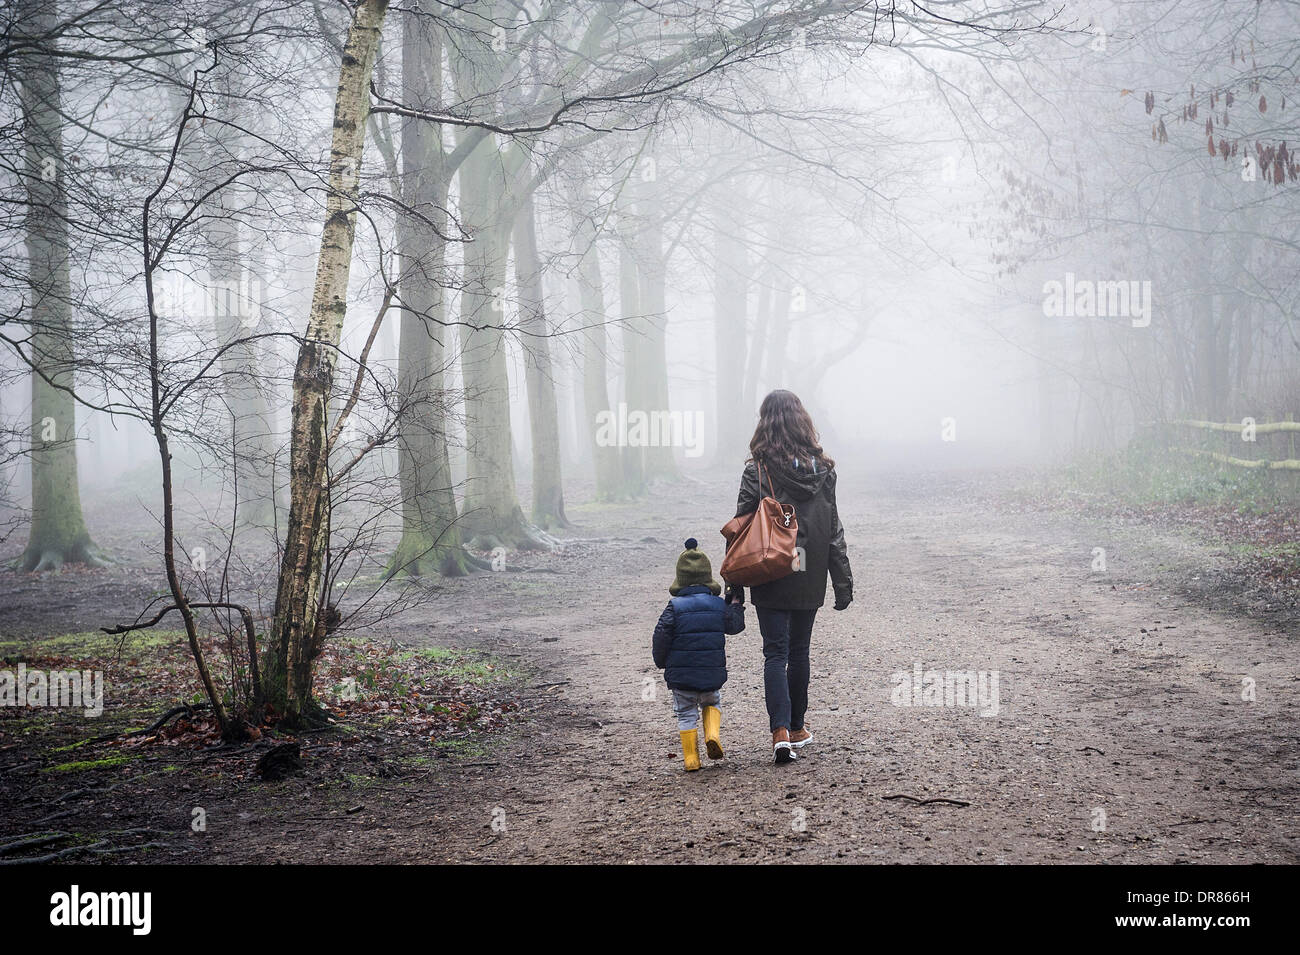 Brentwood, Essex, Regno Unito. 21 gennaio 2014 una madre e suo figlio coraggioso la fitta nebbia e condizioni di congelamento come fare una passeggiata nella campagna dell'Essex. Fotografo: Gordon Scammell/Alamy Live News Foto Stock